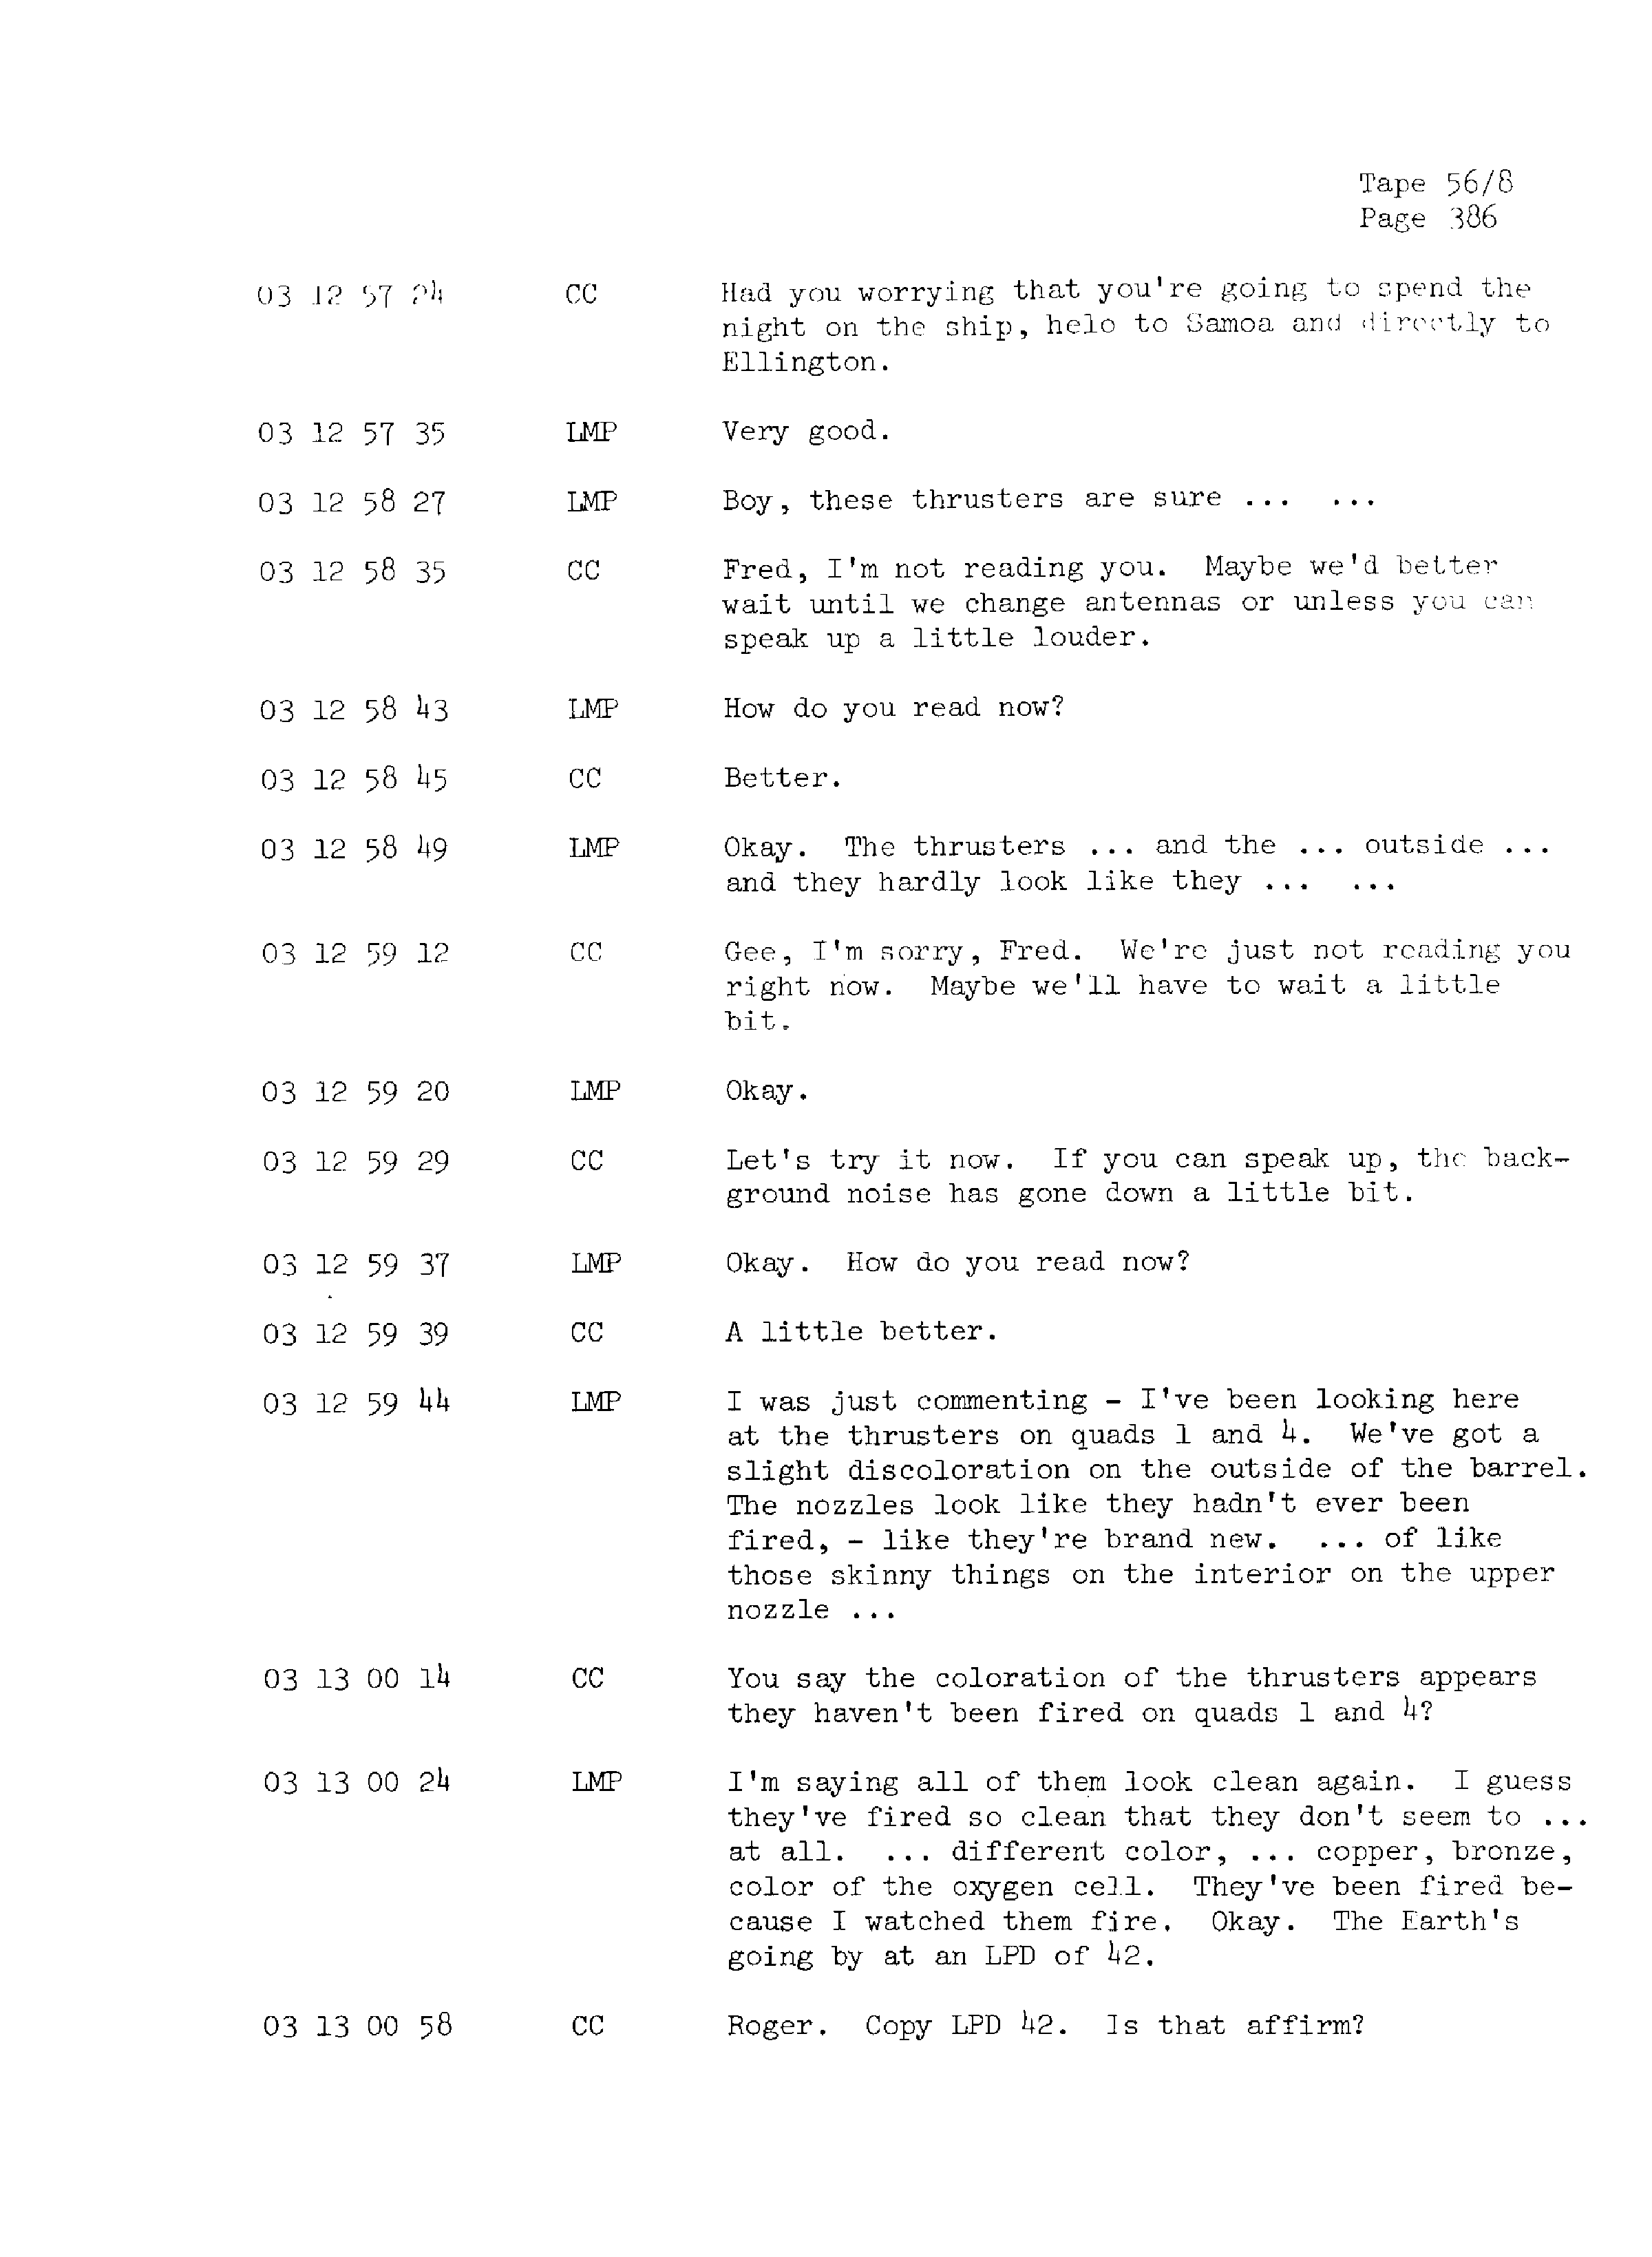 Page 393 of Apollo 13’s original transcript